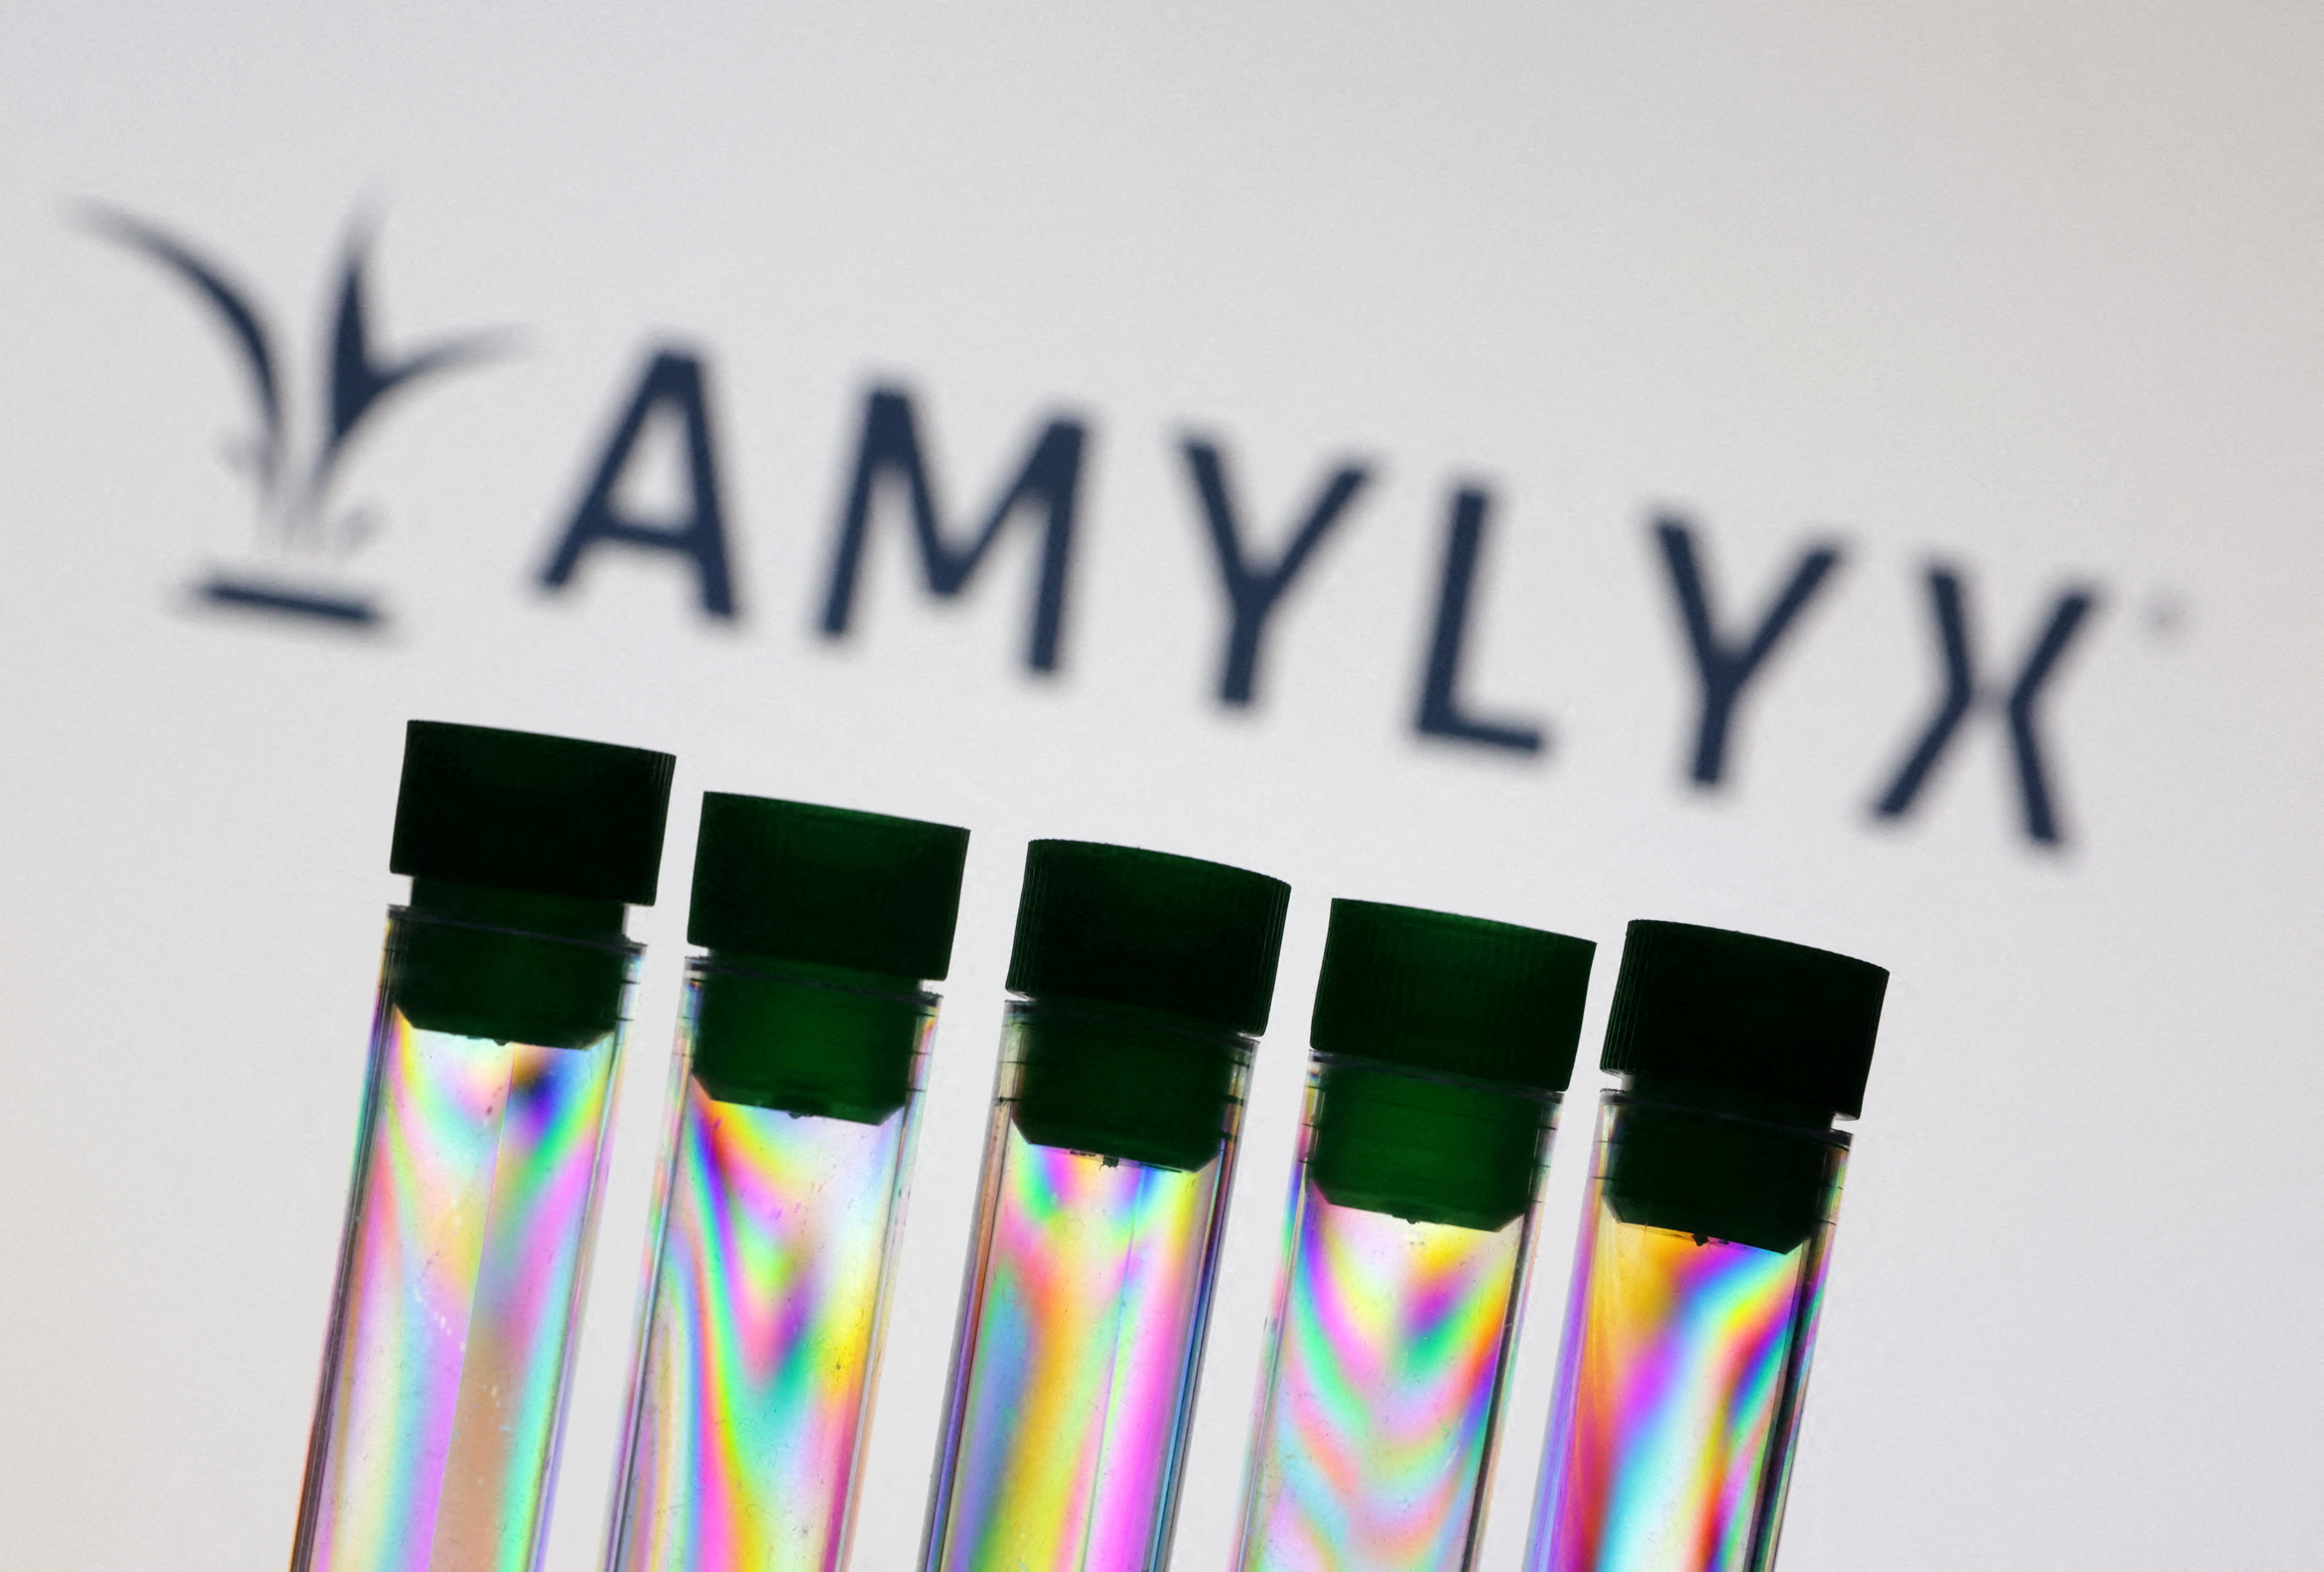 Illustration shows Amylyx logo